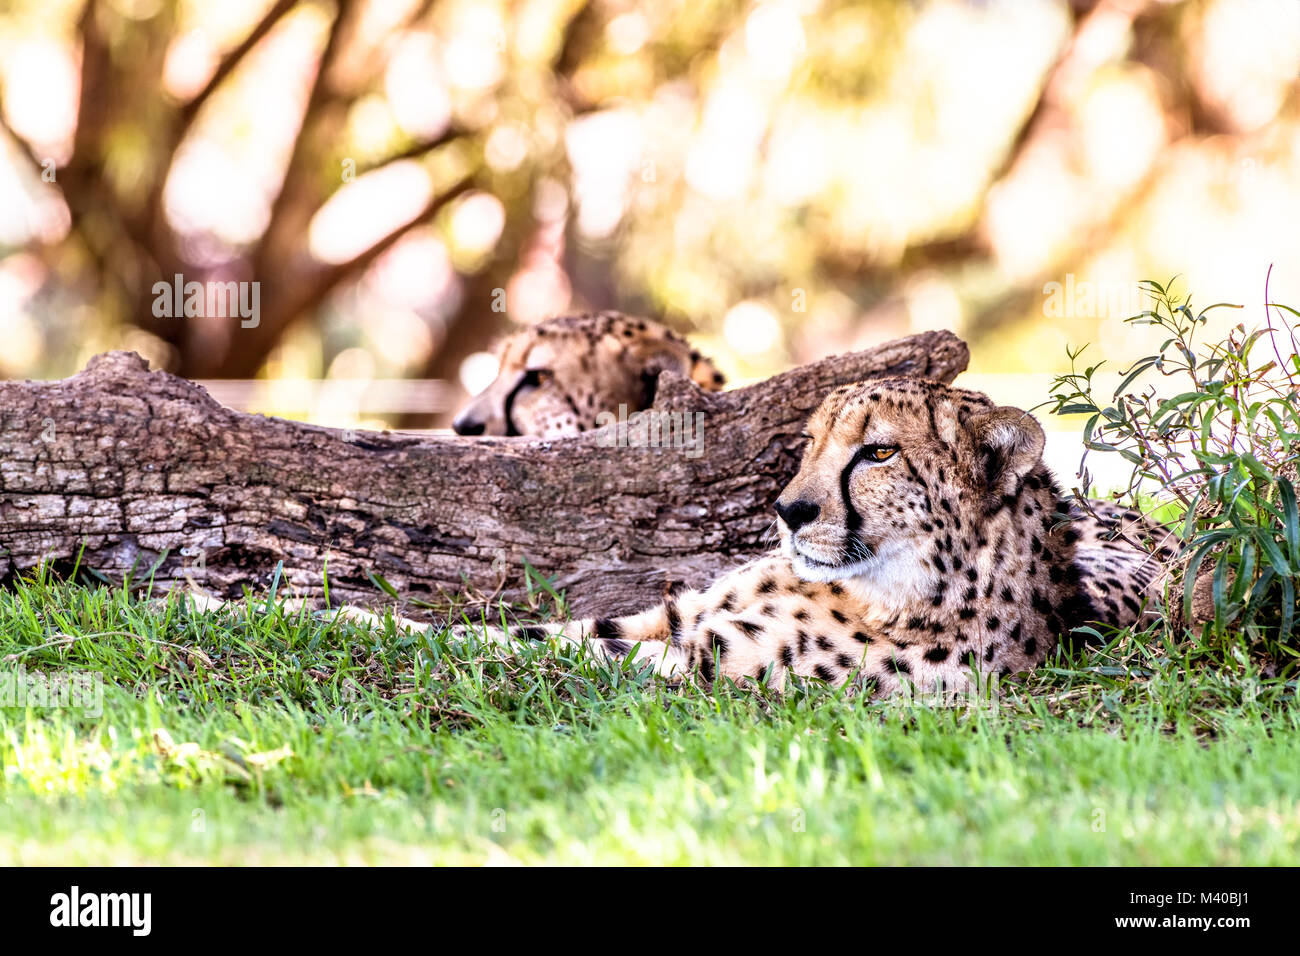 Eine leistungsstarke und schnelle Gepard liegt neben einer in einem schattigen Bereich während einer Safari anmelden Stockfoto